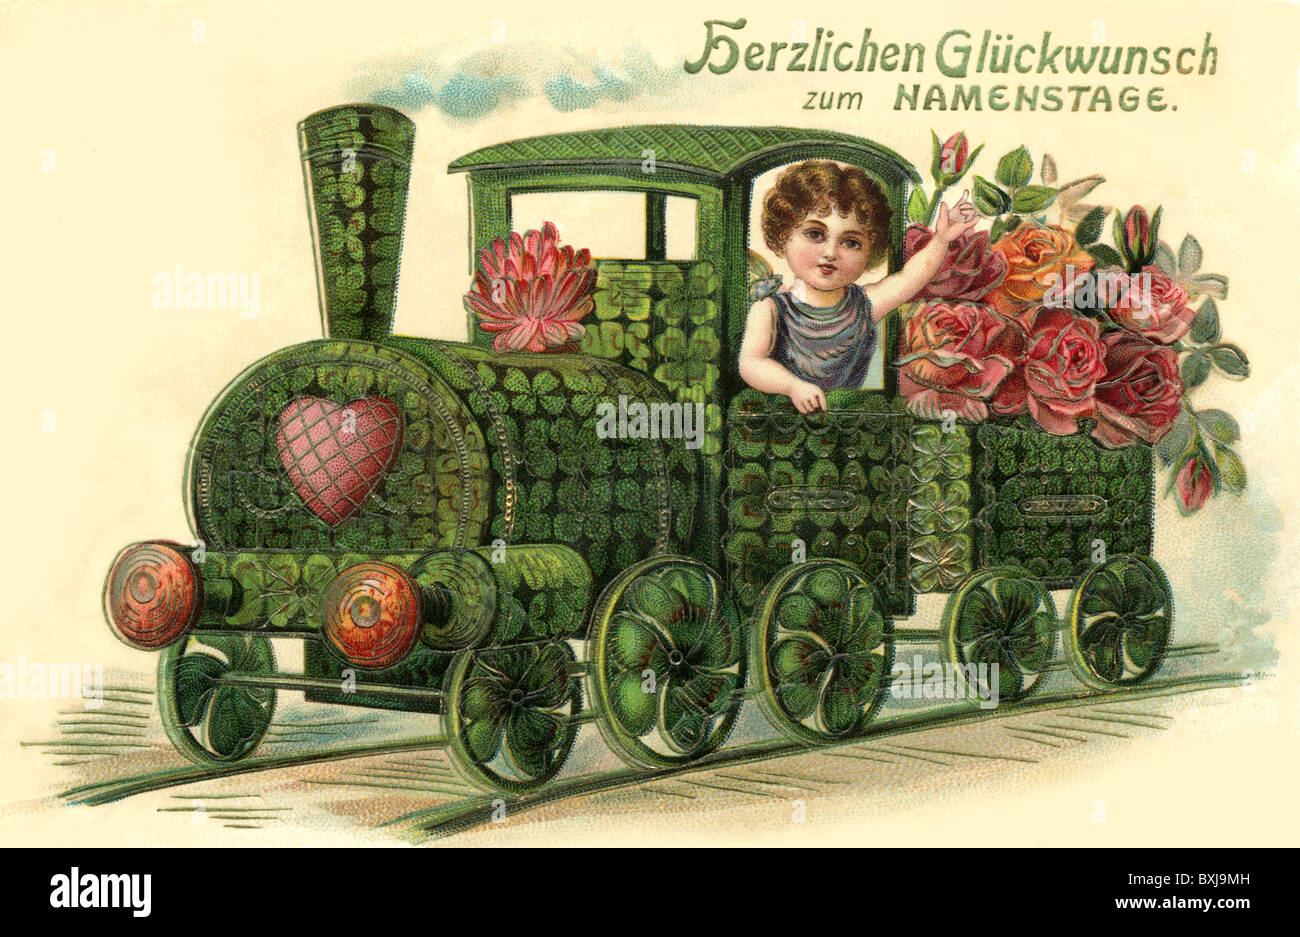 Kitsch, hokum, biglietti d'auguri, auguri per il giorno del nome, locomotiva con fiori e foglie di trifoglio, Germania, circa 1906, diritti aggiuntivi-clearences-non disponibile Foto Stock